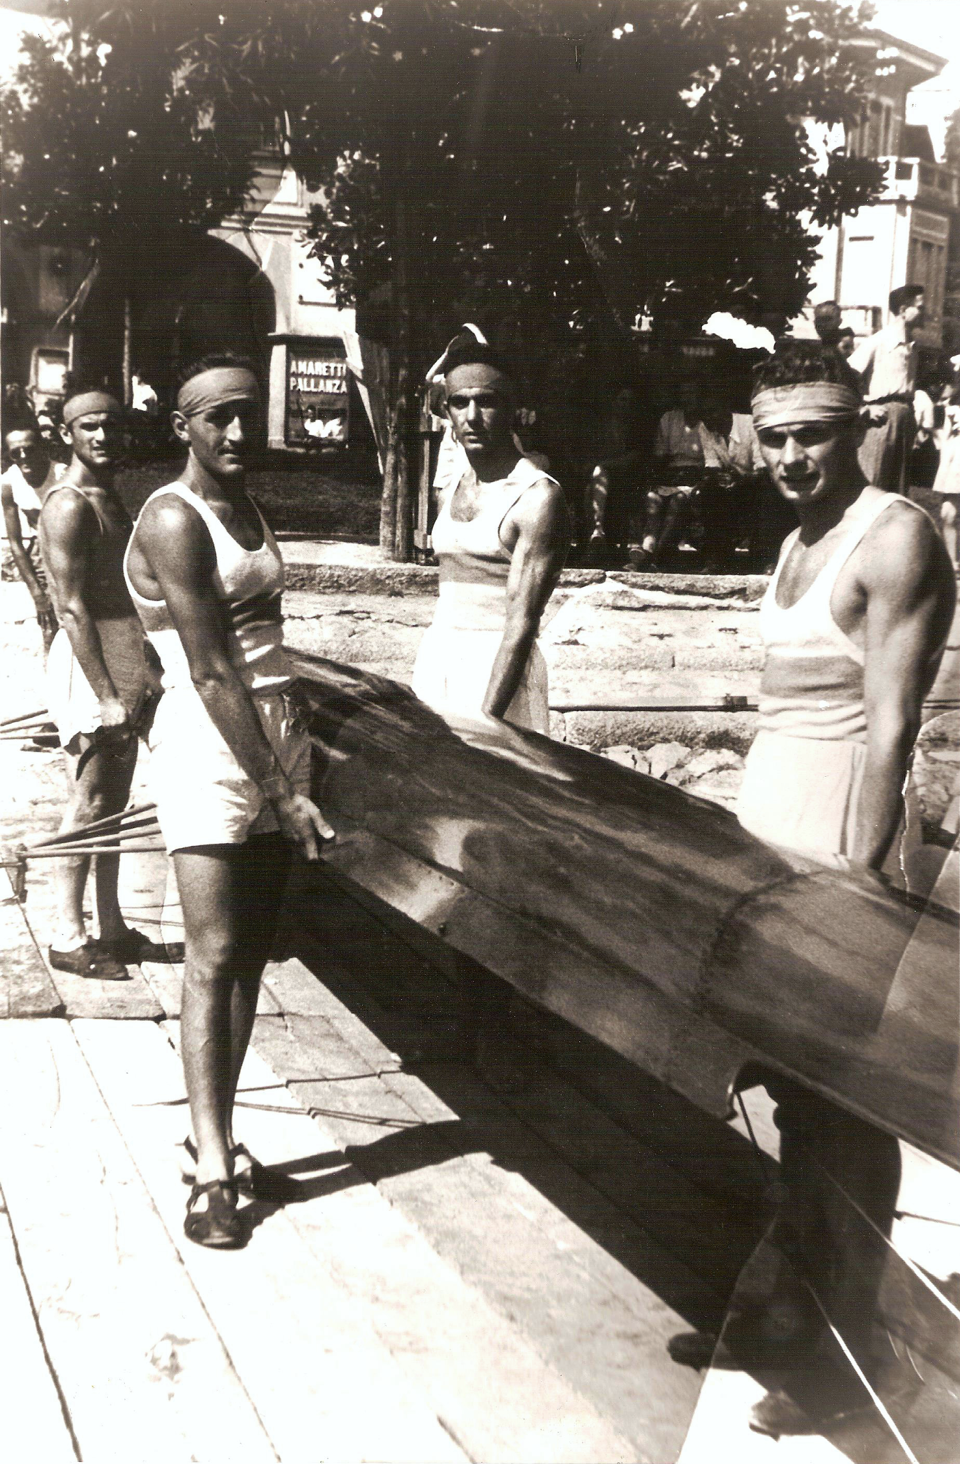 Pallanza 1947 - Timoniere Cambieri D., Cerutti R., Gotti F., Macario R., Polloni R.